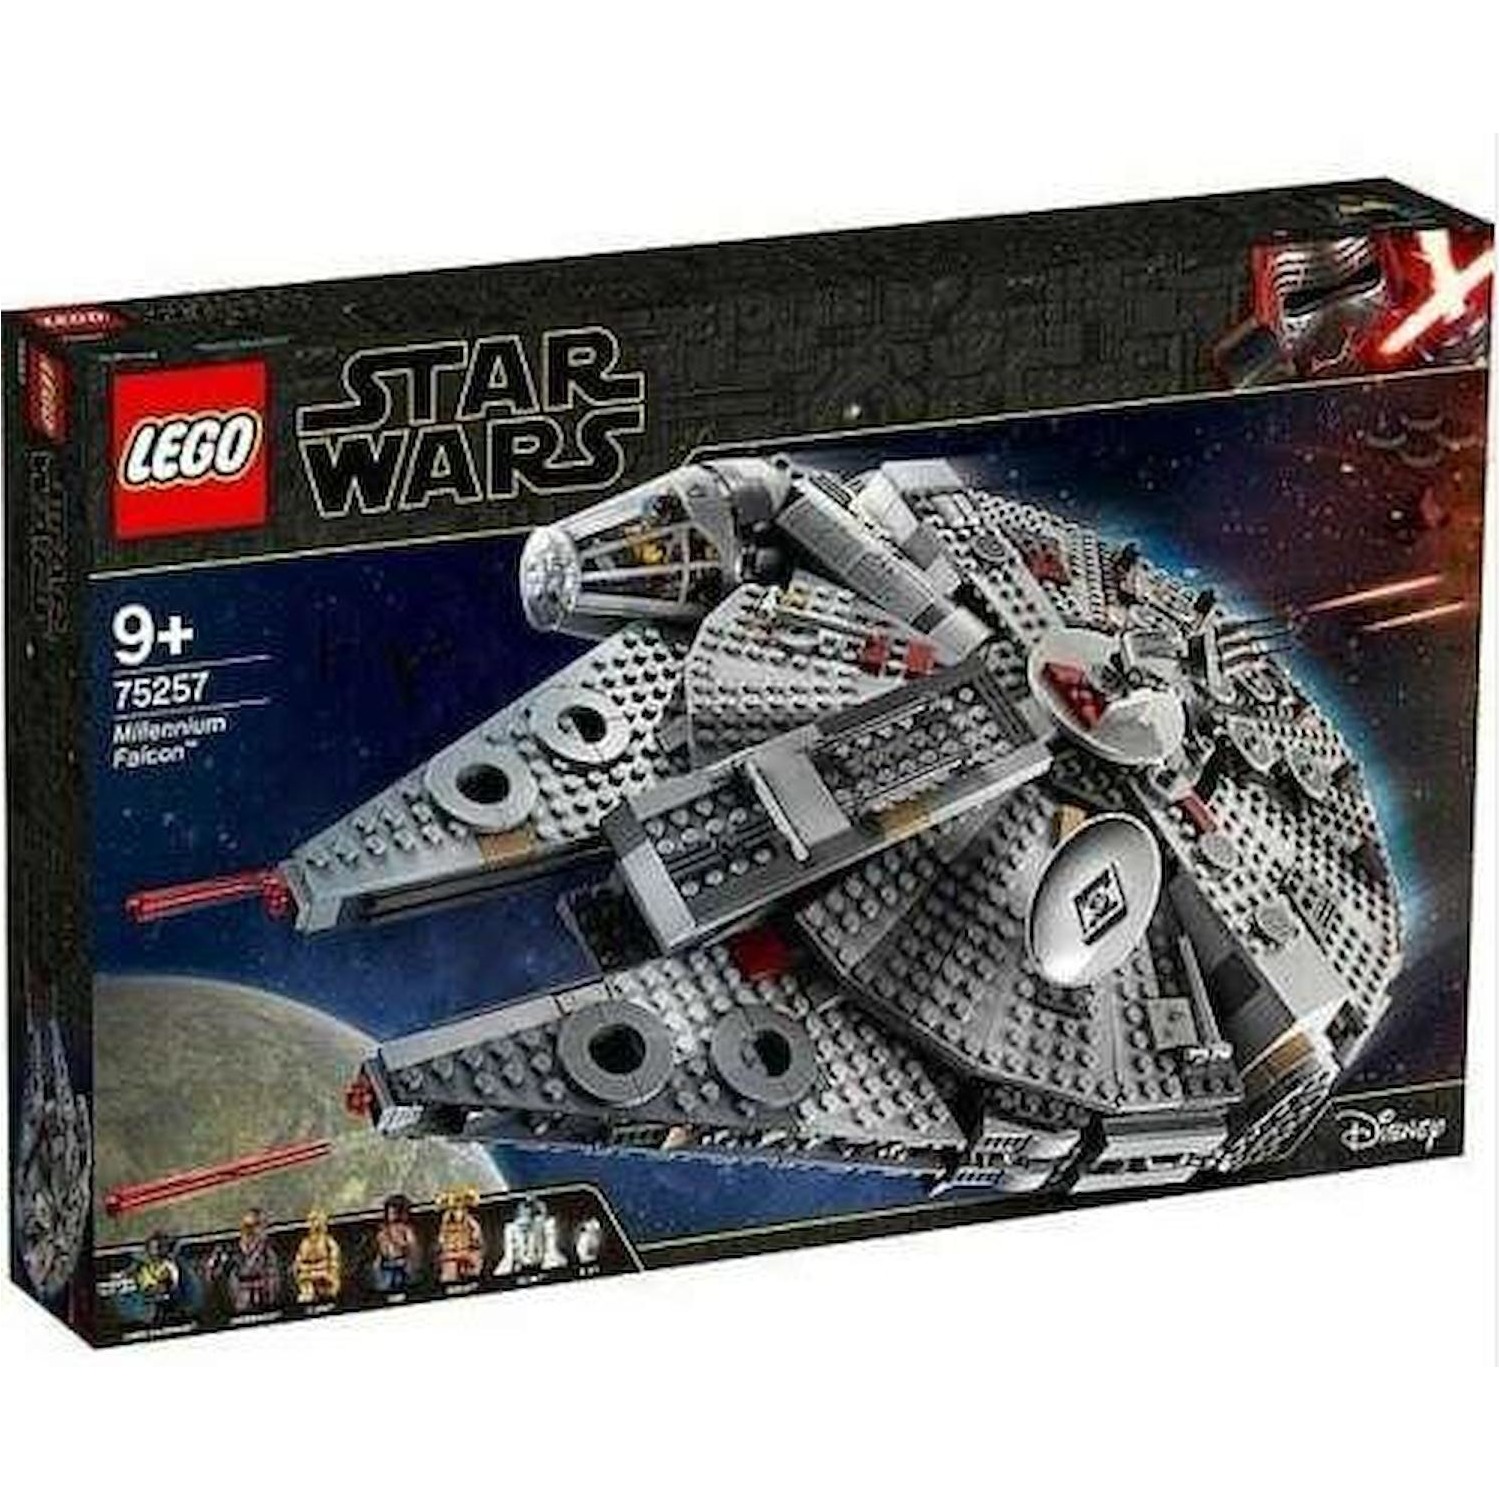 Immagine per Lego Star Wars Millenium Falcon da DIMOStore